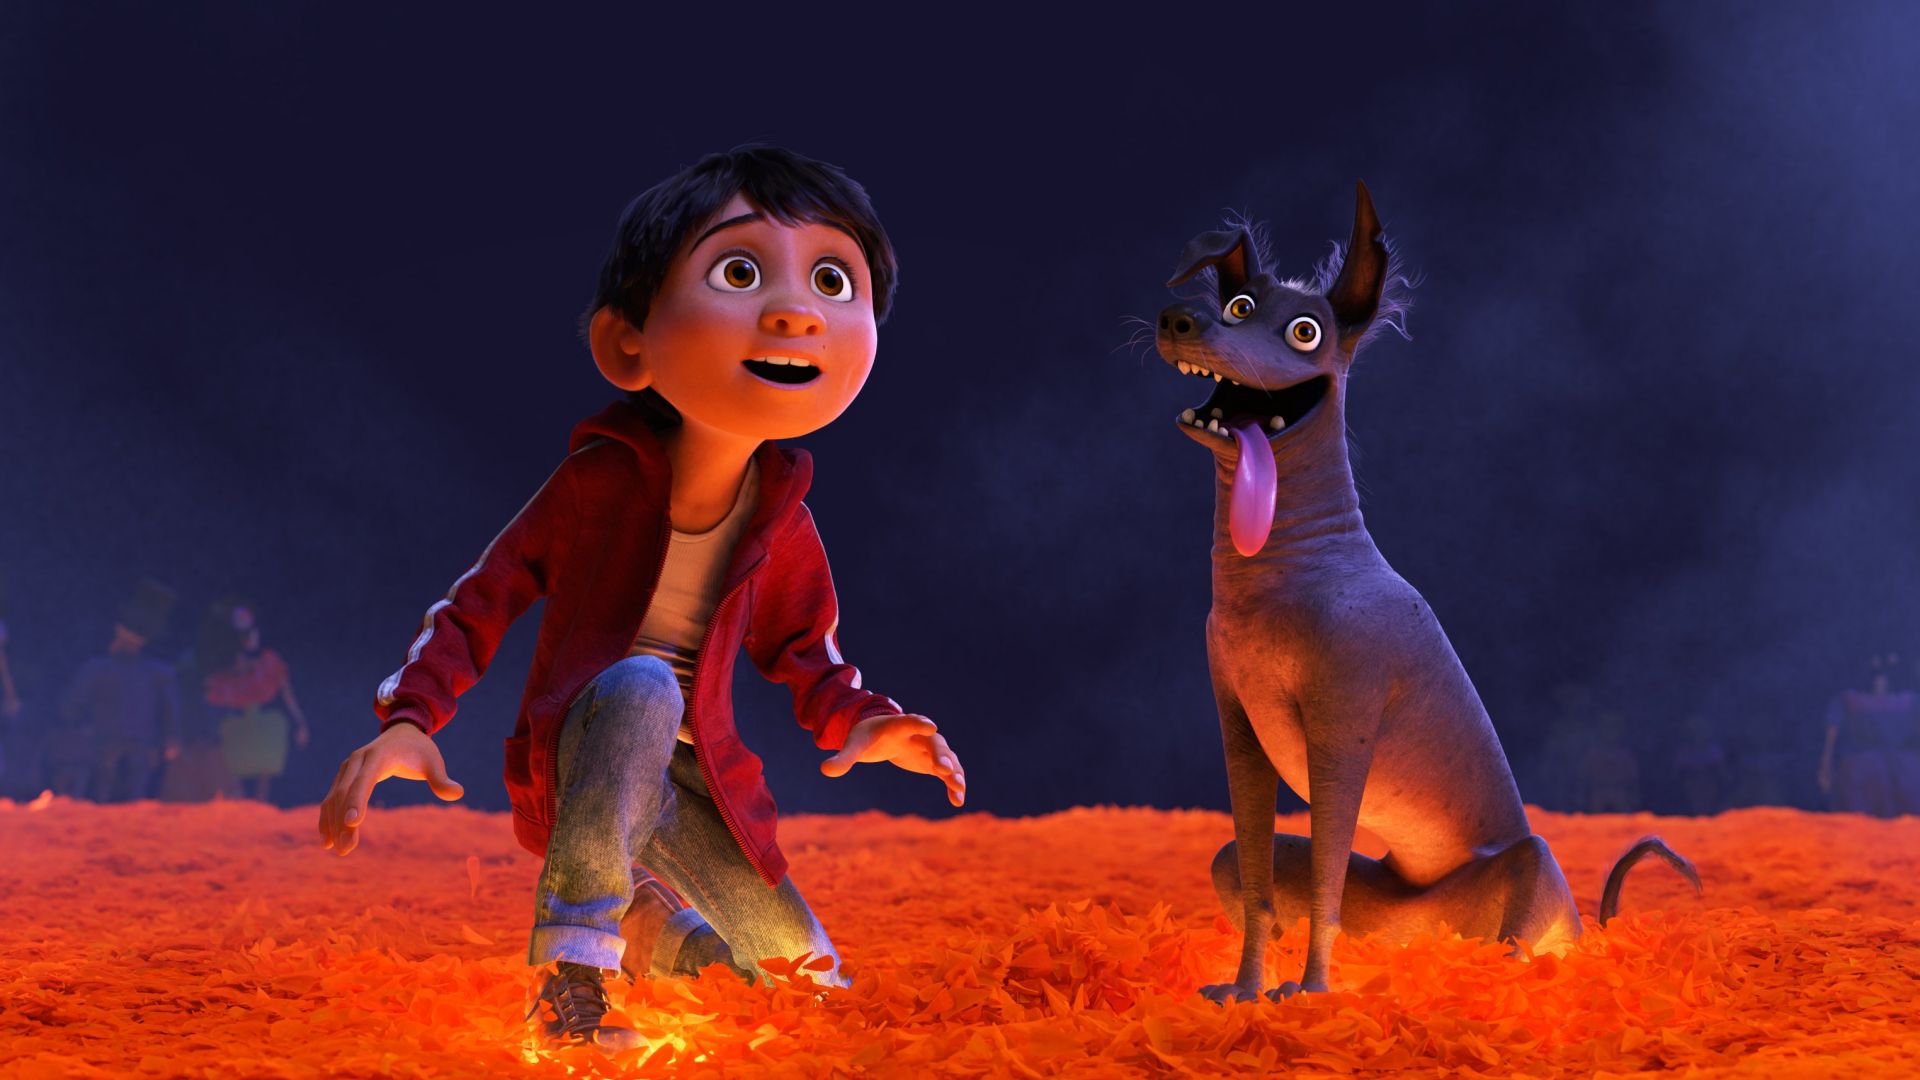 Коко, собака, лучшие мультфильмы, Coco, dog, best animation movies (horizontal)